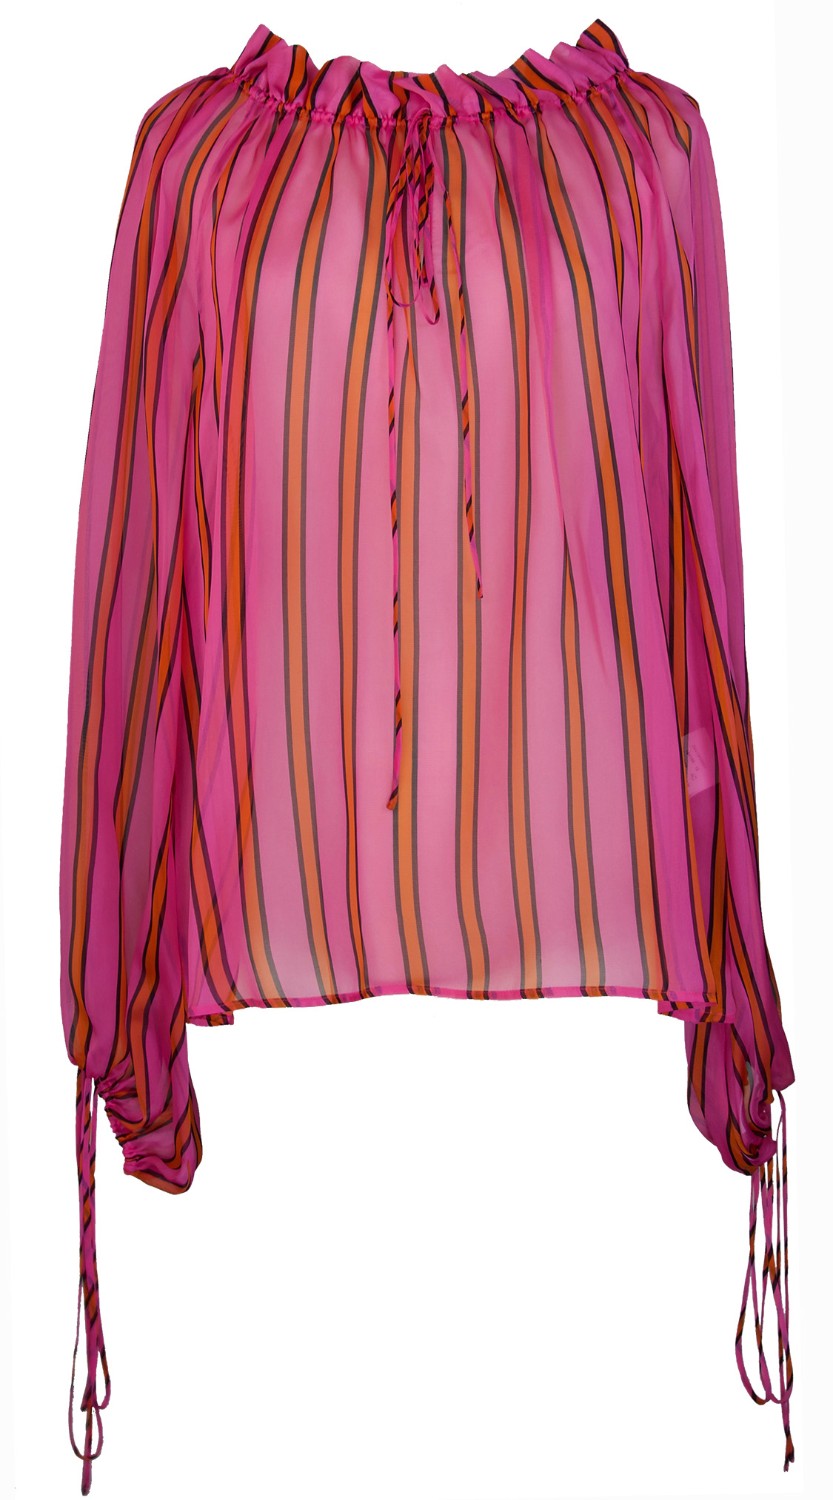 shop MSGM  Tops: Camicia MSGM, manica lunga, a righe arancio e rosa, in voile di seta, nastri per stringere collo e polsi.

Composizione: 100% seta. number 1148